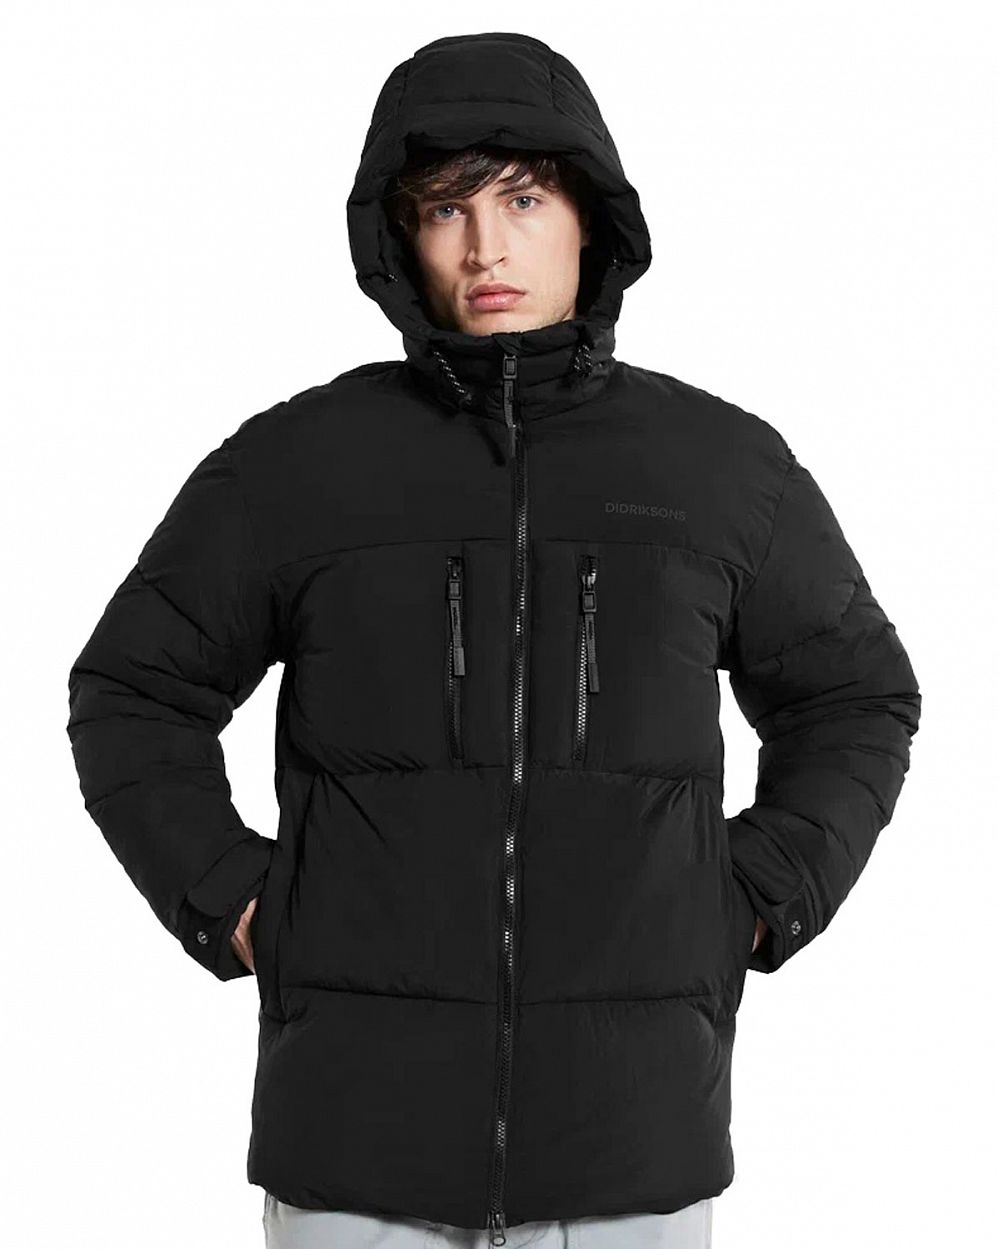 Куртка мужская зимняя водонепроницаемая Didriksons Hilmer Black отзывы